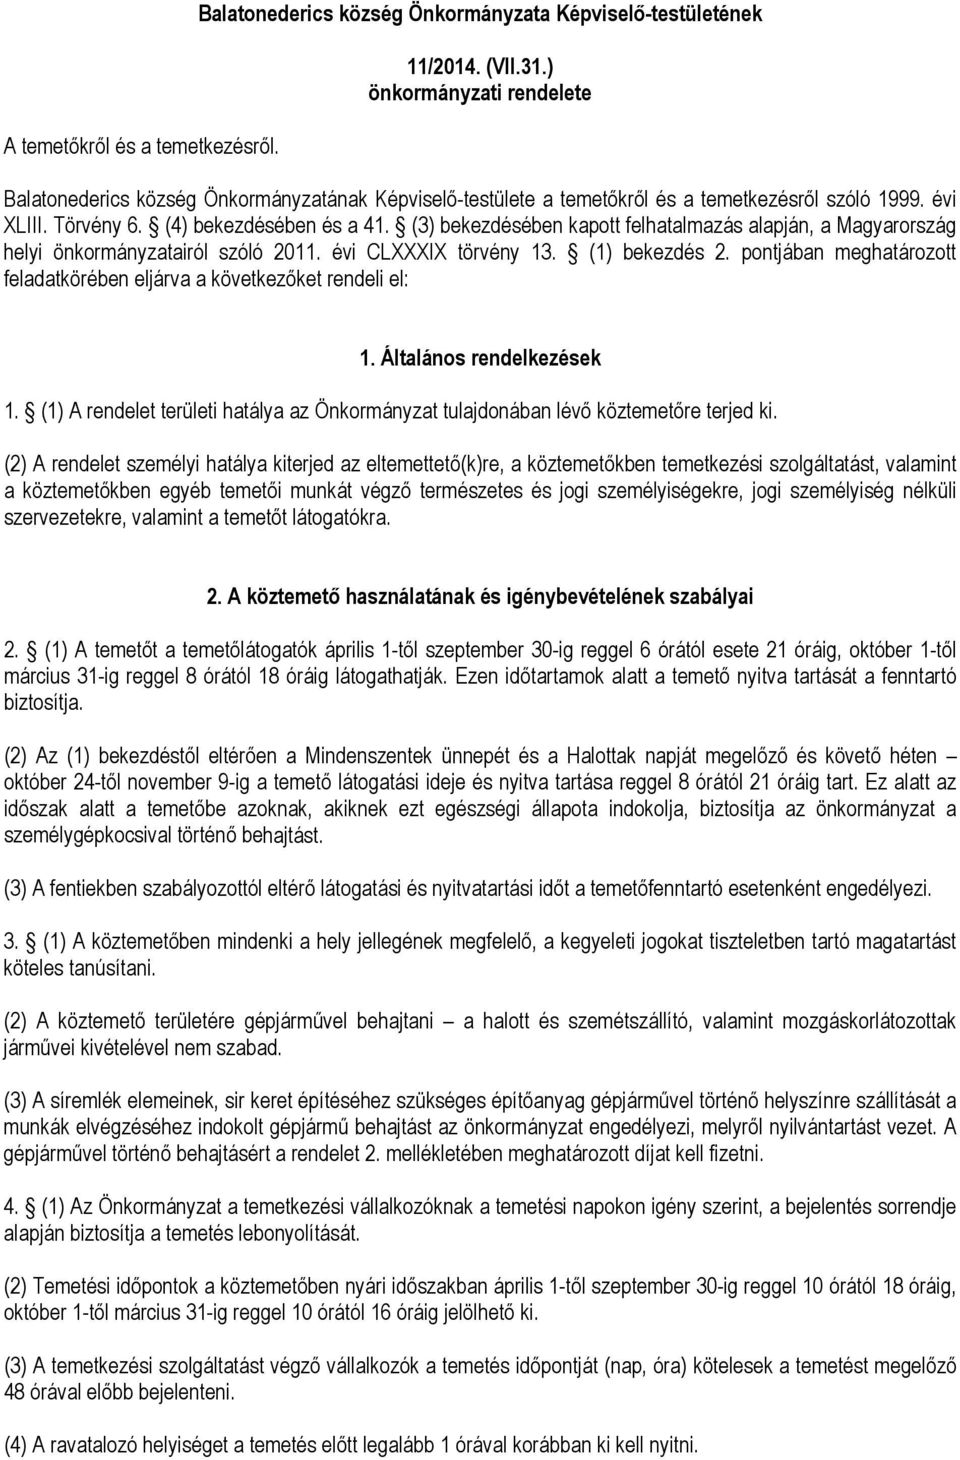 (3) bekezdésében kapott felhatalmazás alapján, a Magyarország helyi önkormányzatairól szóló 2011. évi CLXXXIX törvény 13. (1) bekezdés 2.